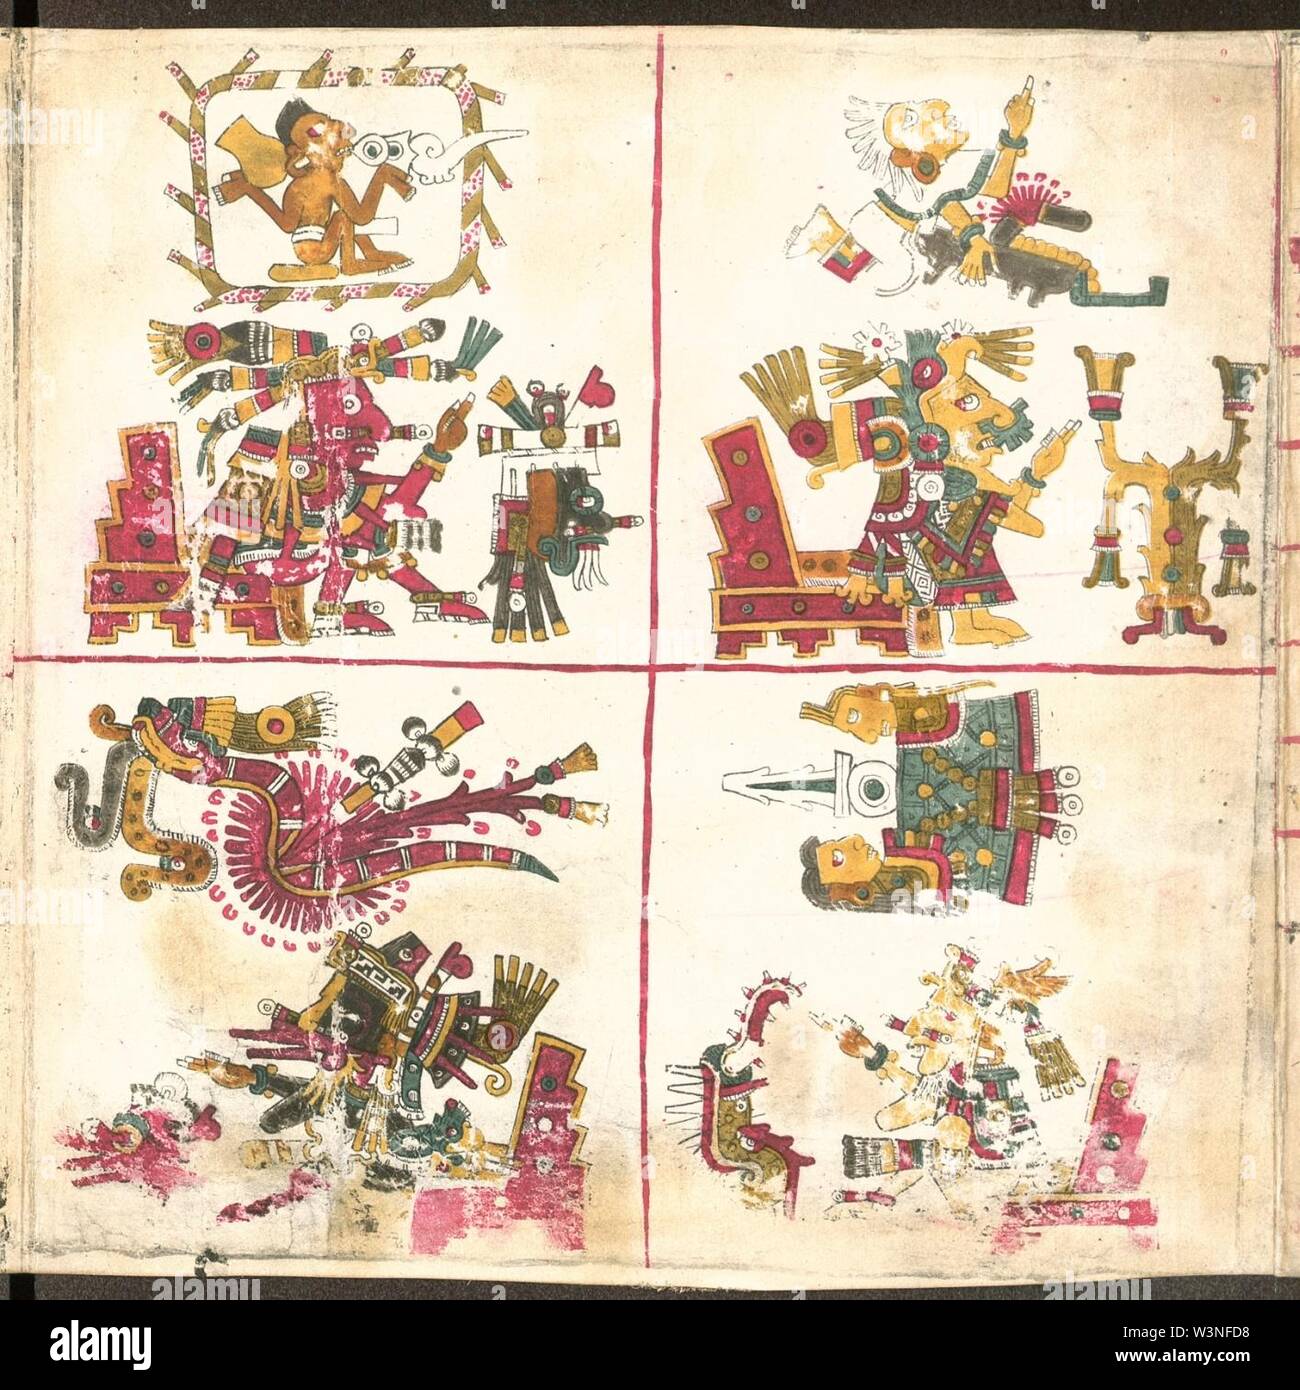 Aztec Codex Borgia